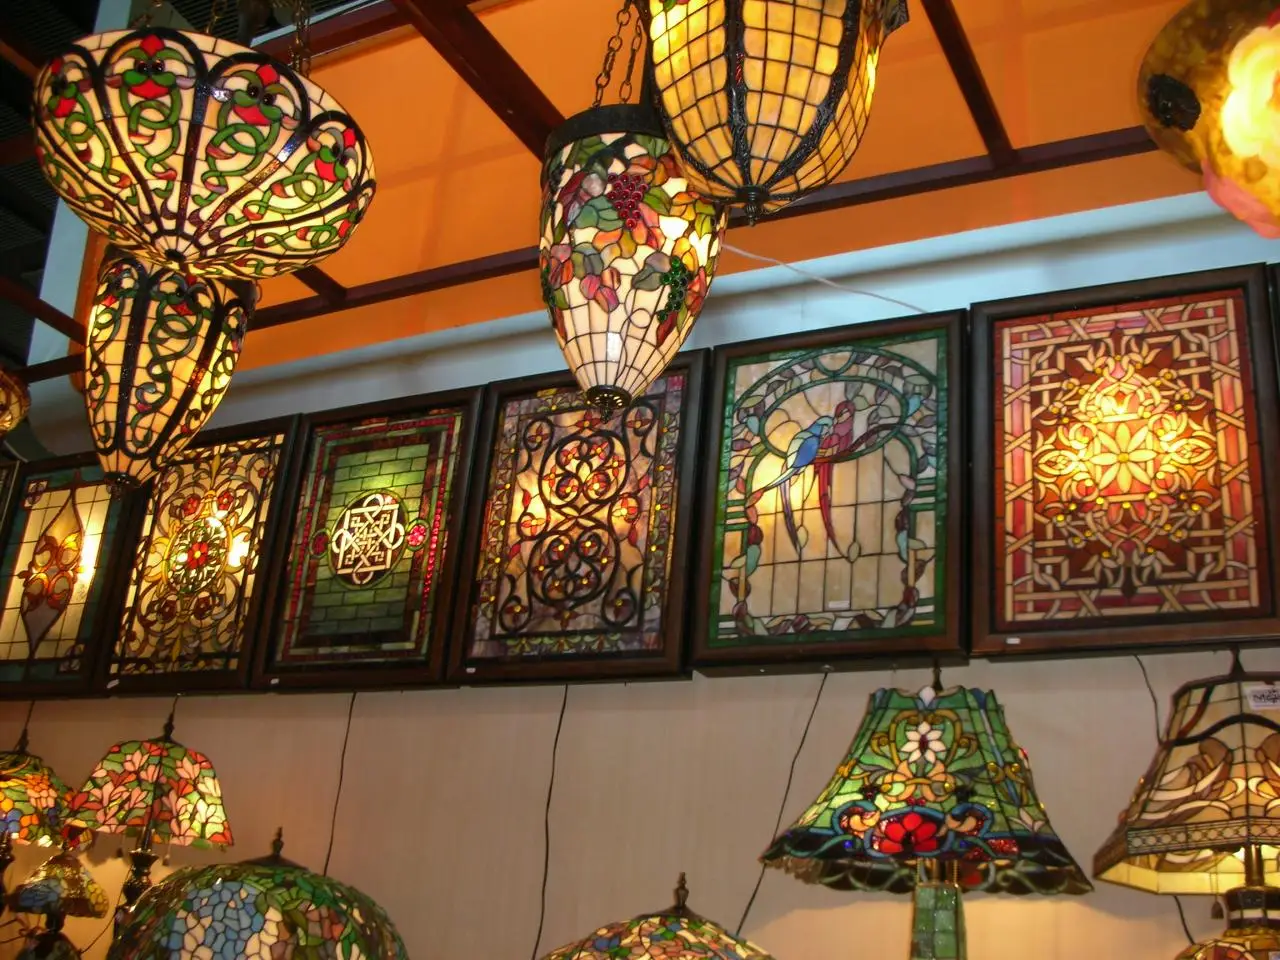 турецкие лампы из цветного стекла в интерьере